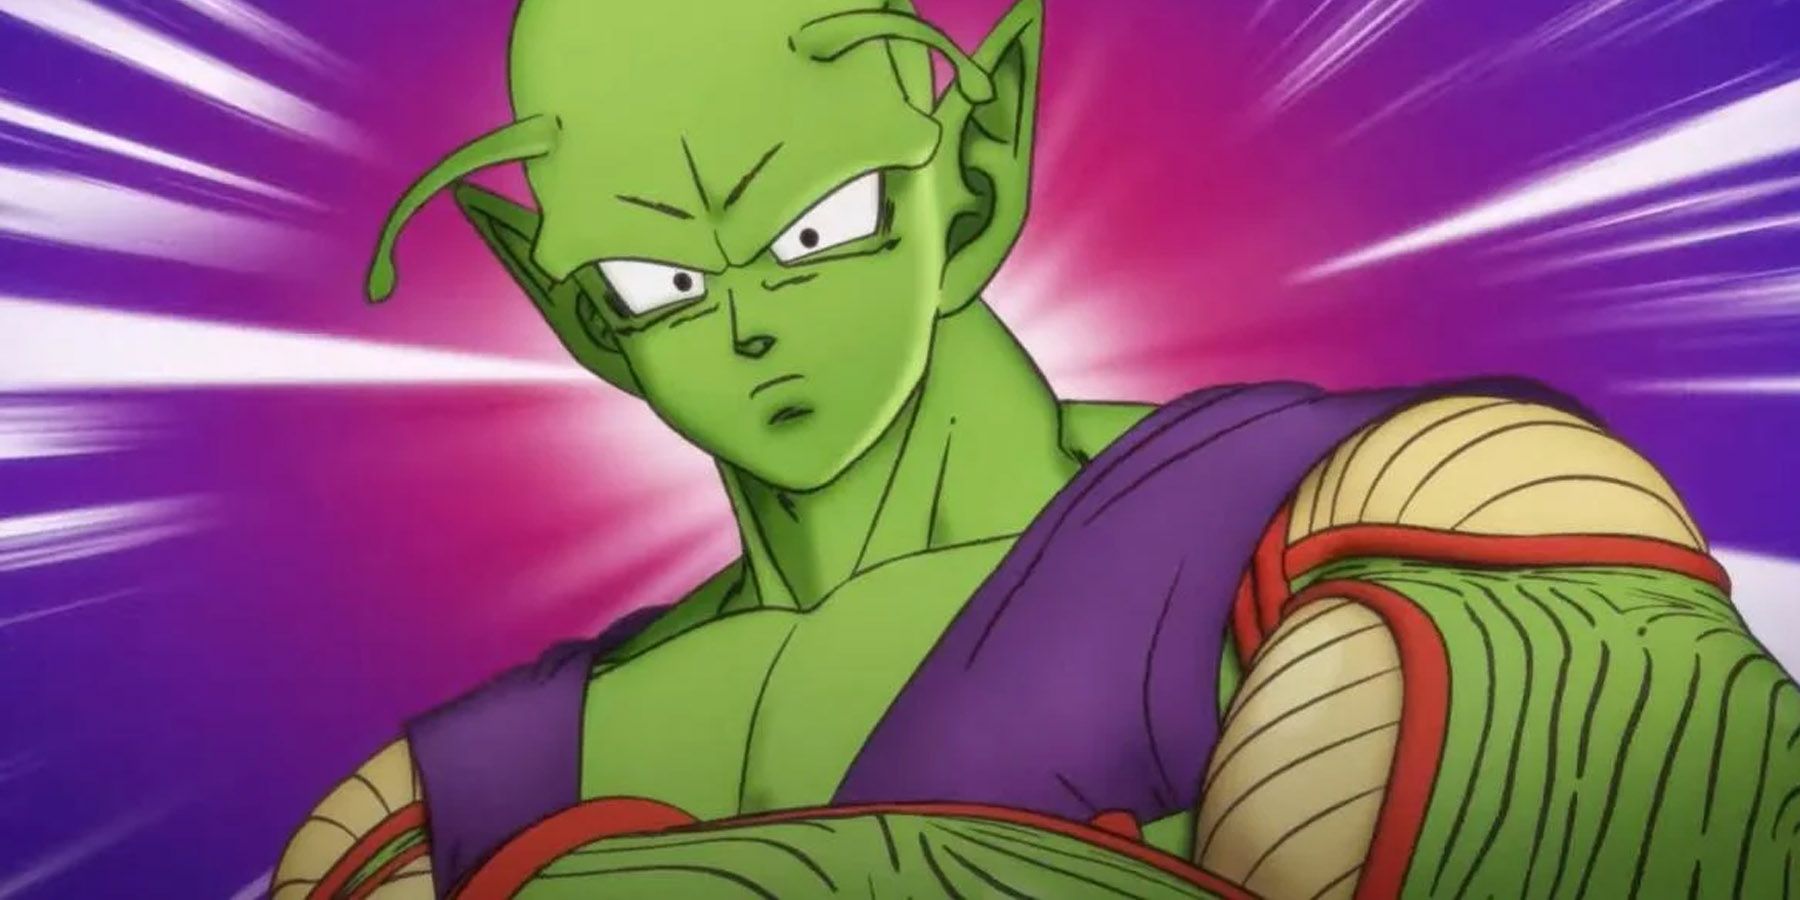 Piccolo as seen in Dragon Ball